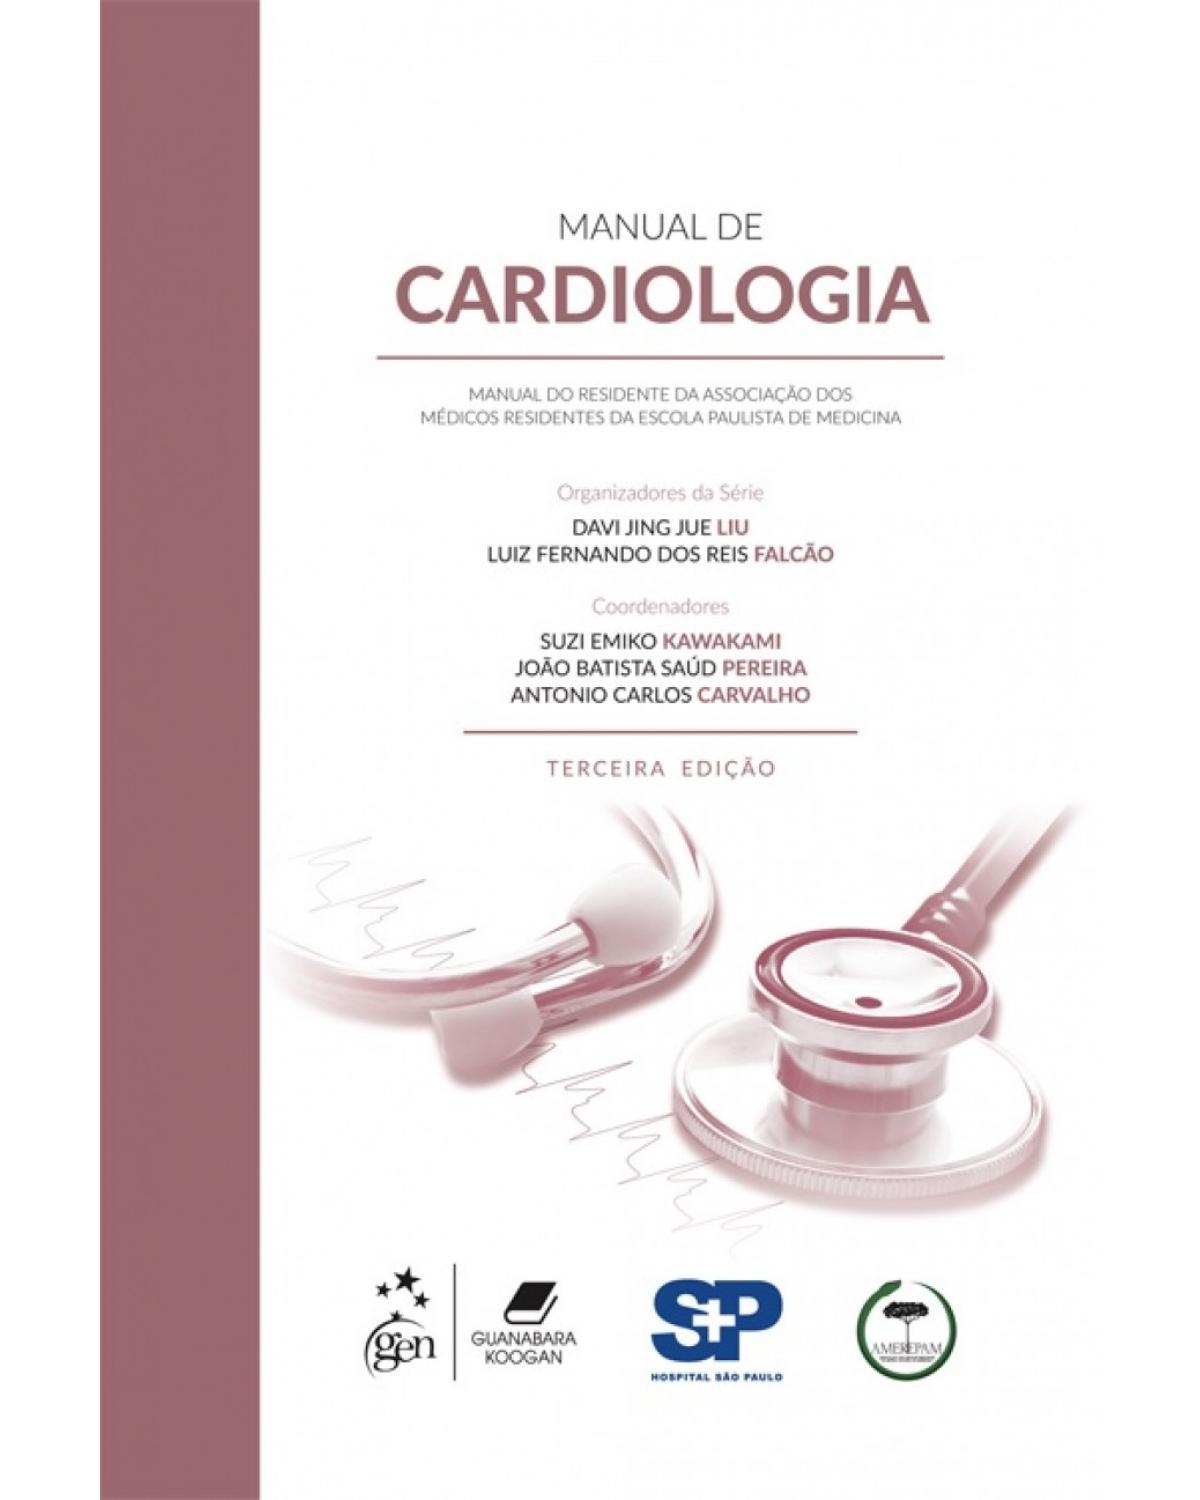 Manual de cardiologia - manual do residente da Associação dos Médicos Residentes da Escola Paulista de Medicina - 3ª Edição | 2018